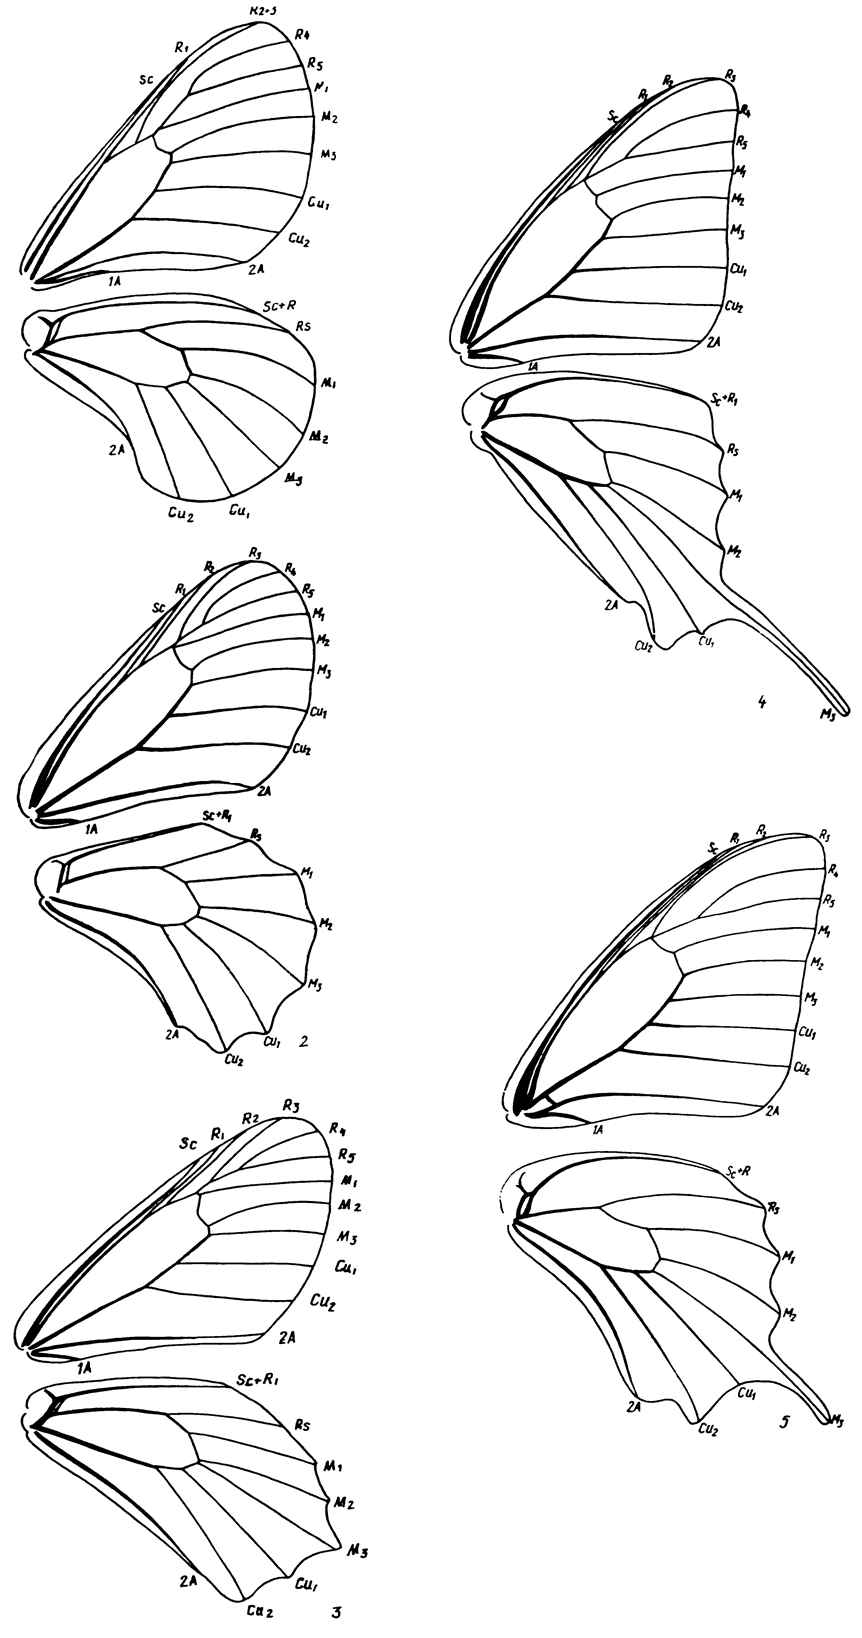 . 11.         Papilionidae: 1 - Parnassius mnemosyne (L.) (Parnassiinae, Parnassiini), 2 - Zerynthia polyxena (Den. et Schiff.) (Parnassiinae, Zerynthiini), 3 - Allancastria caucasica (Led.) (Parnassiinae, Zerynthiini), 4 - Iphiclides podalirius (L.) (Papilioninae, Leptocircini), 5 - Papilio machaon L. (Papilioninae, Papilionini)